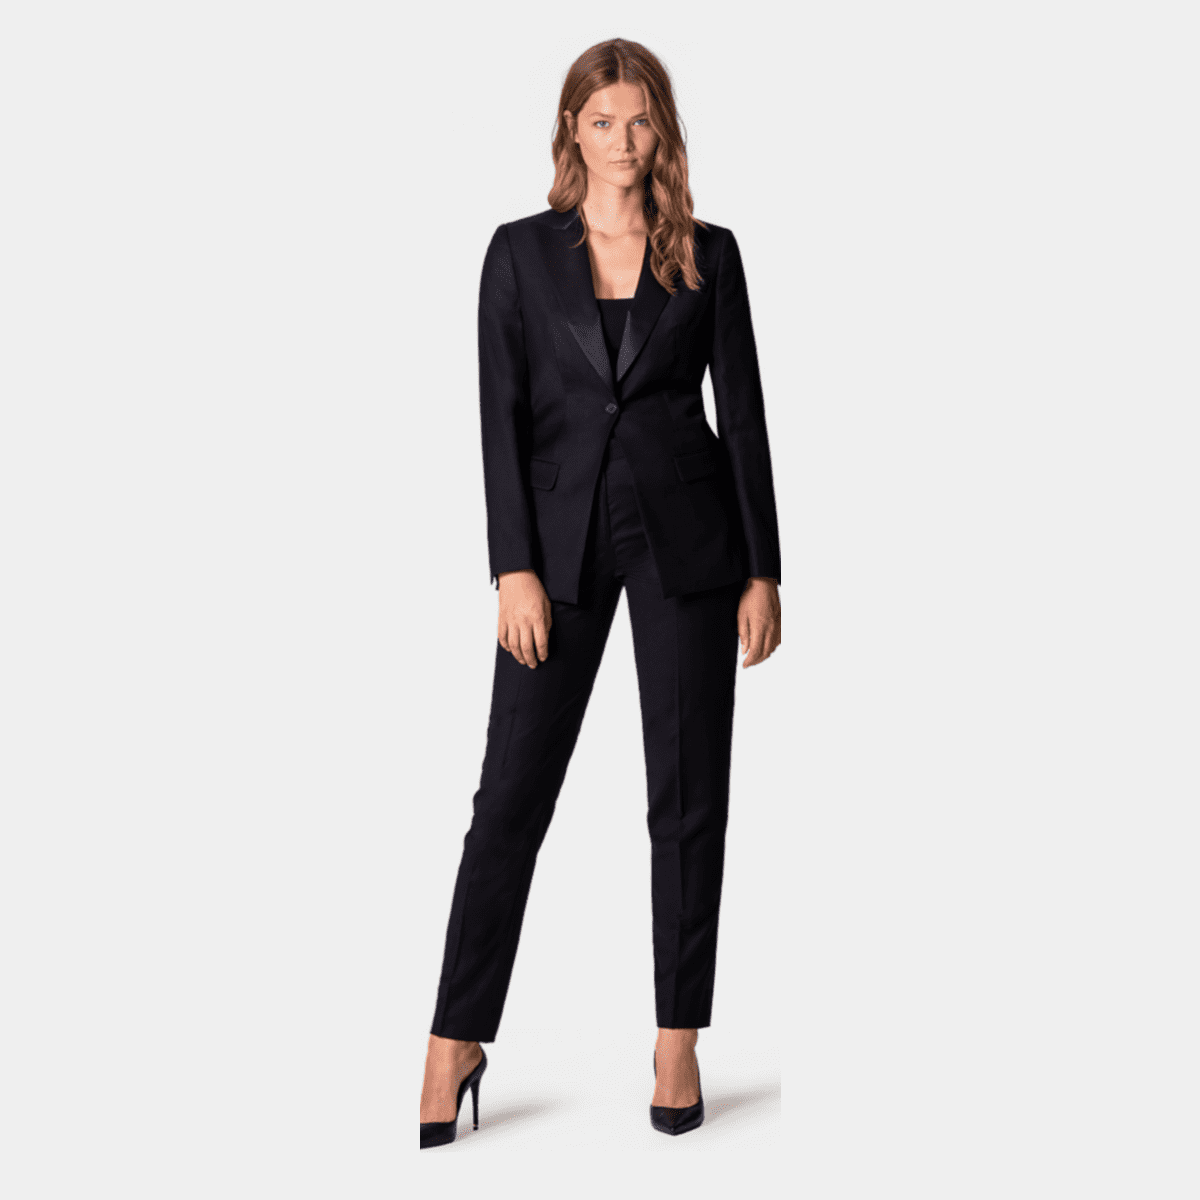 women's tuxedo pant suit plus size